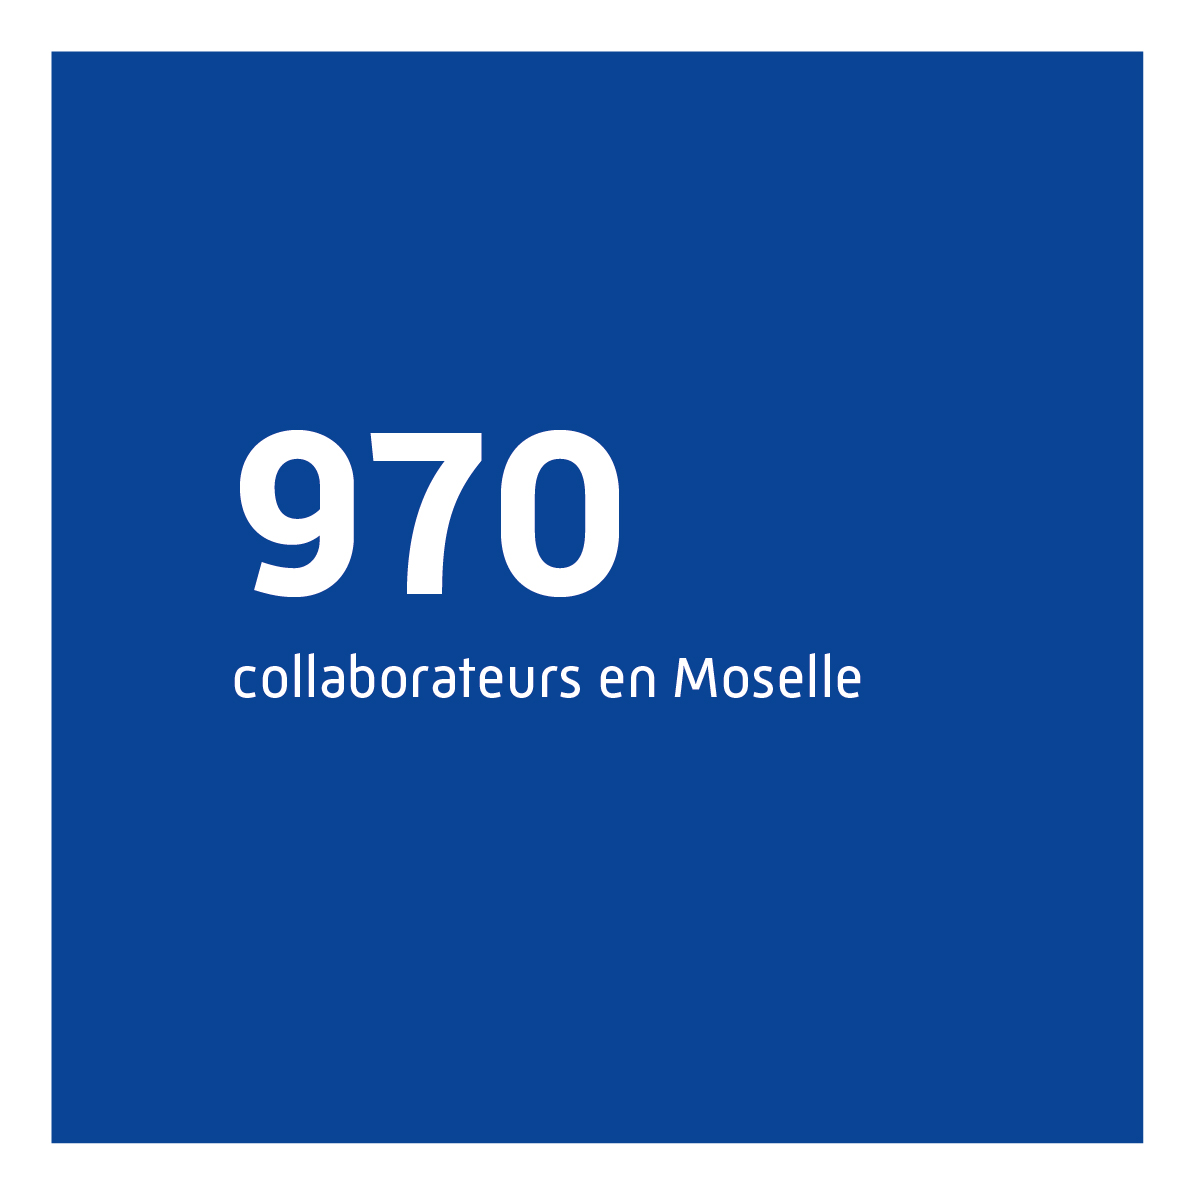 Près de 970 collaborateurs en Moselle.